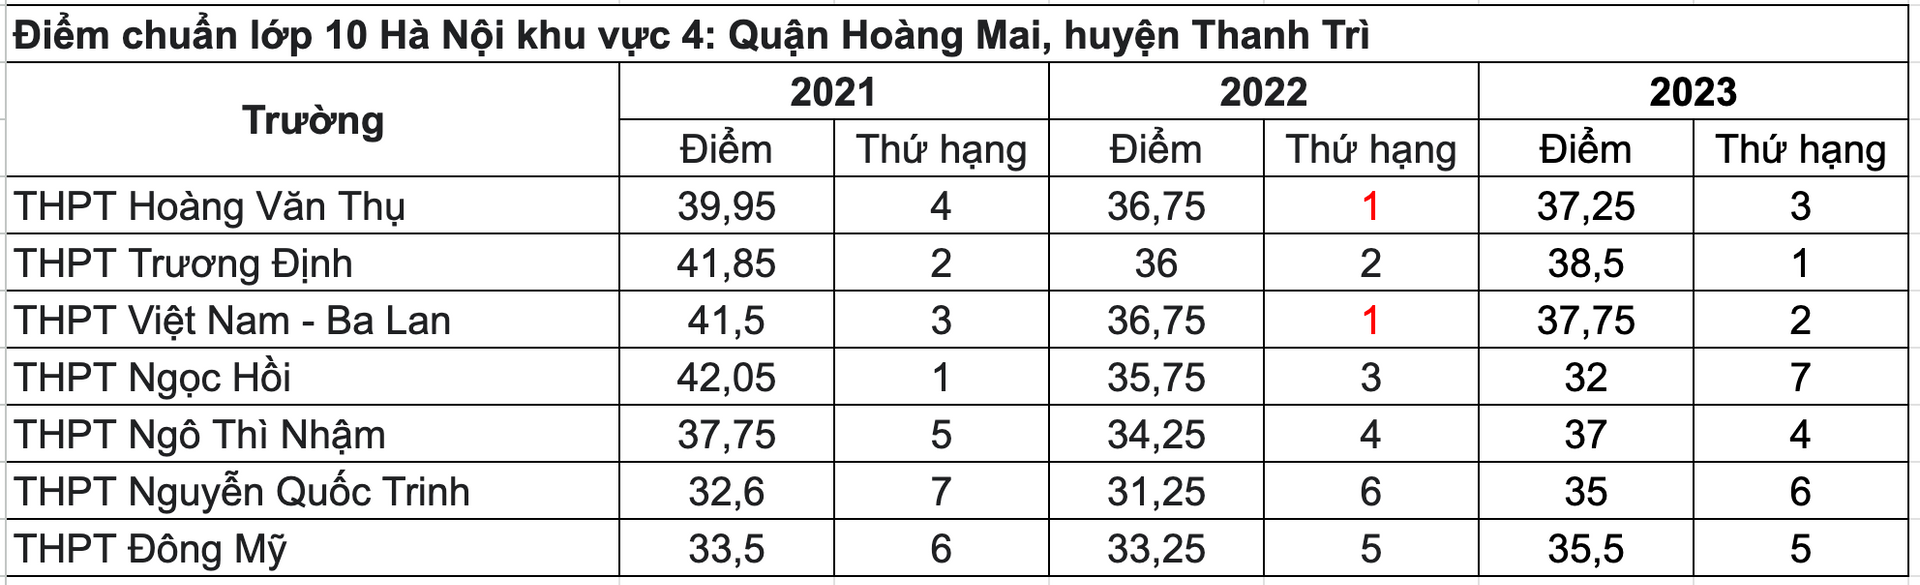 Điểm chuẩn TUYỂN SINH LỚP 10 các trường của Hà Nội 3 năm gần đây- Ảnh 5.